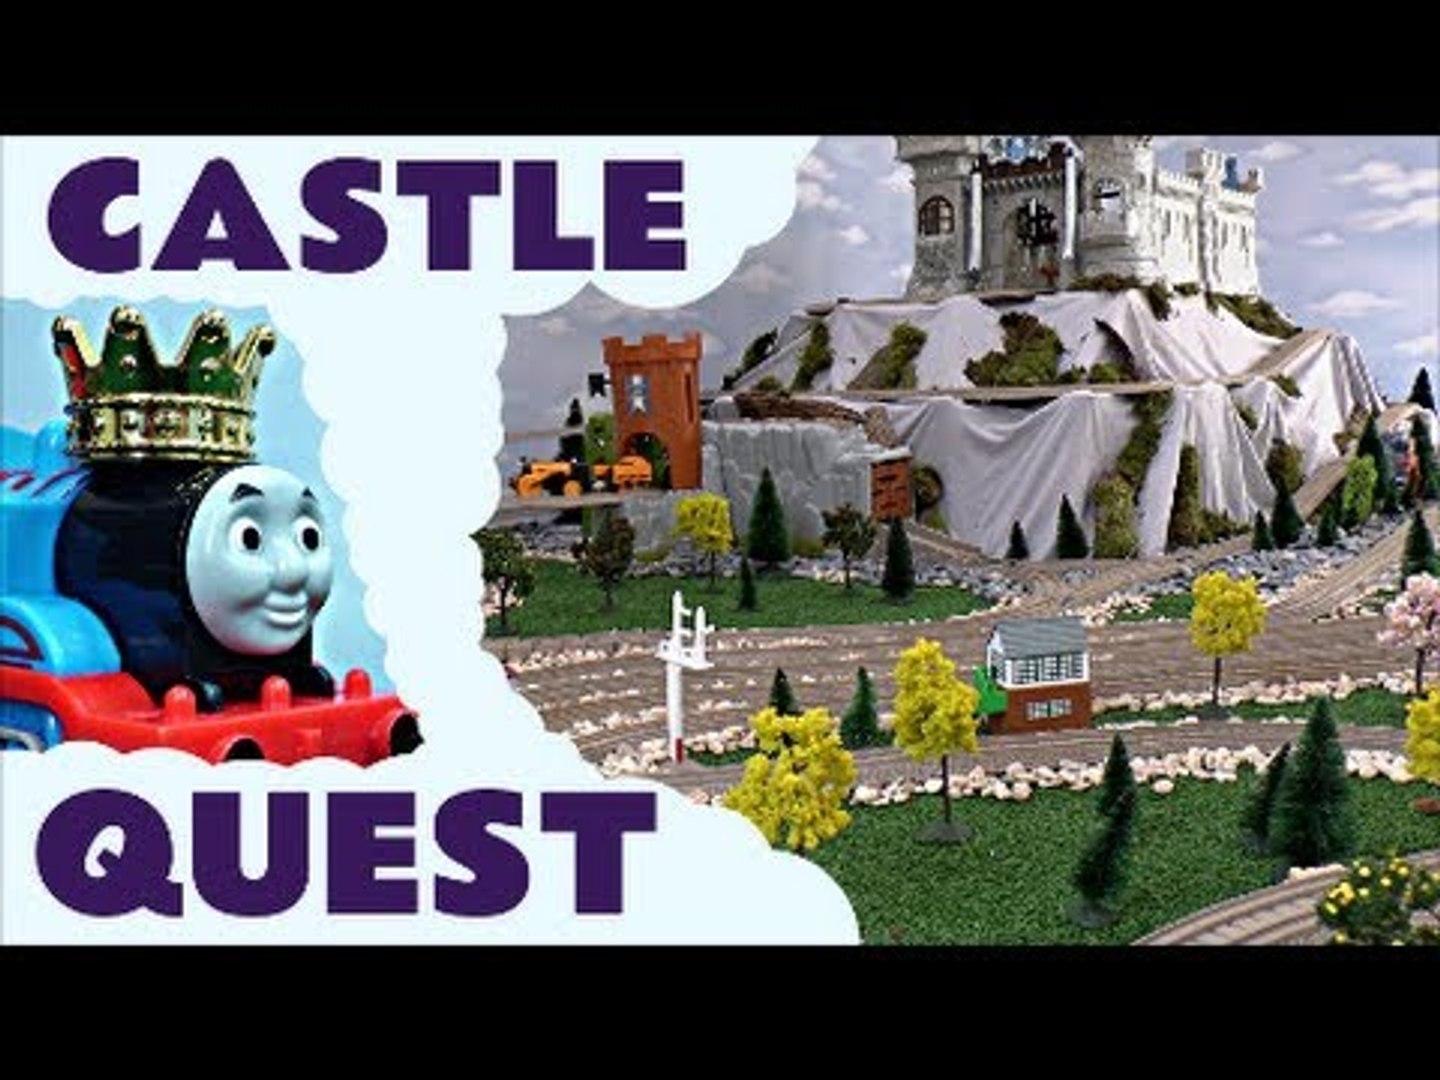 thomas the train castle quest set